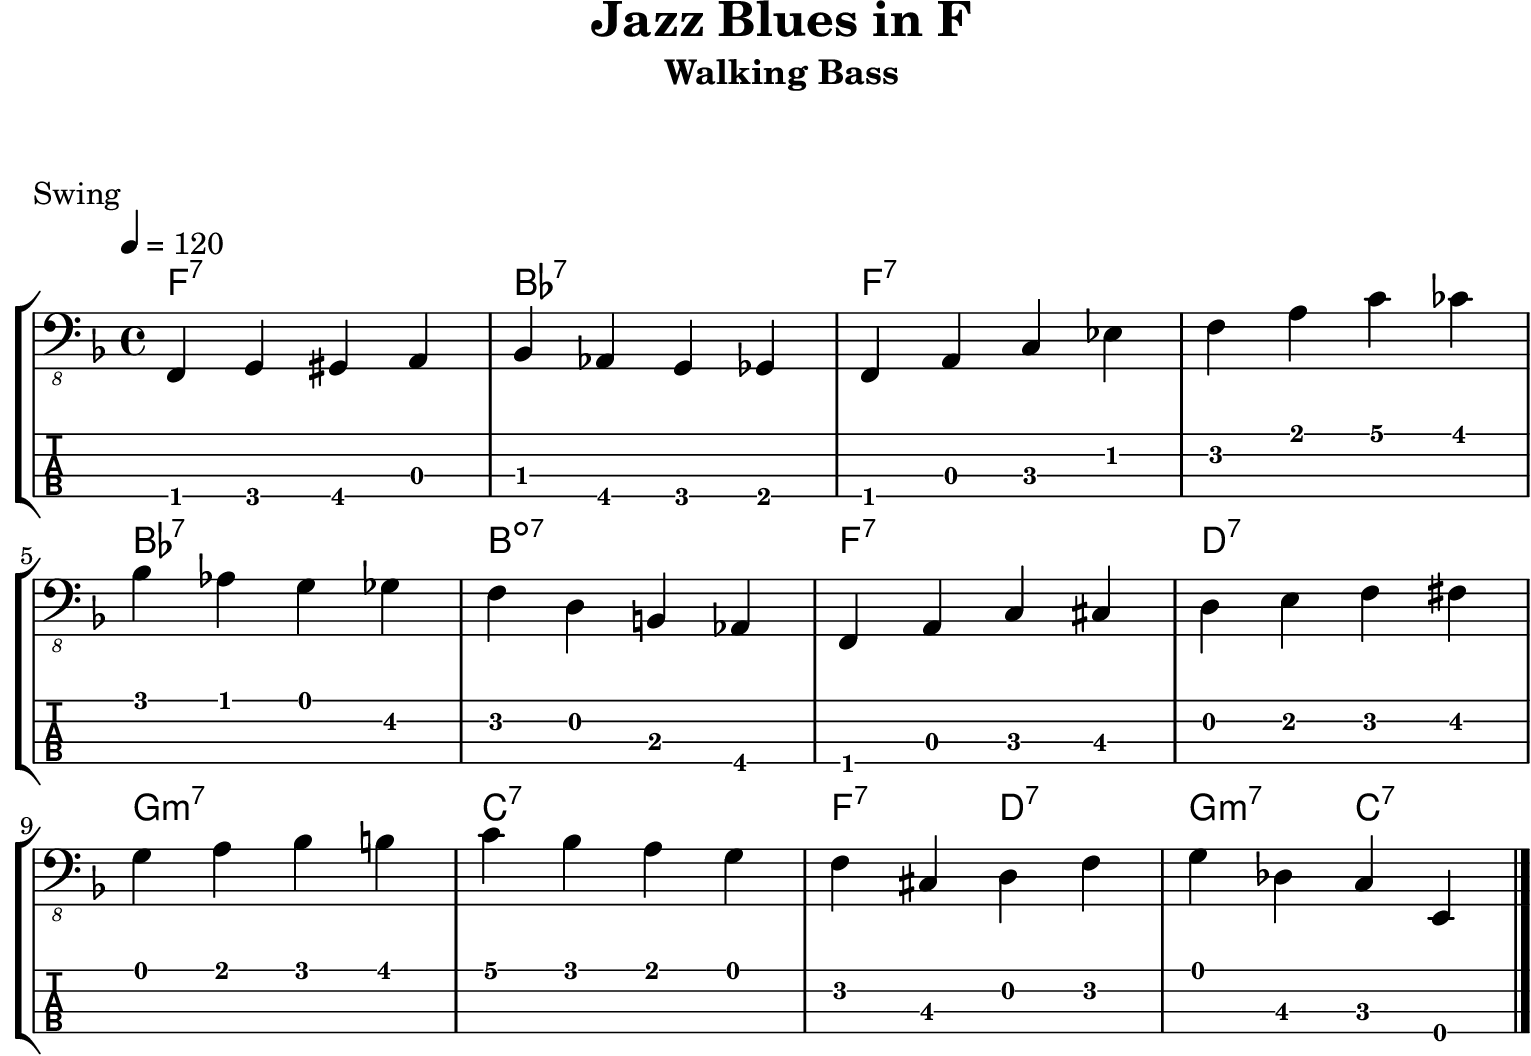 Walking Bass - Jazz Blues in F